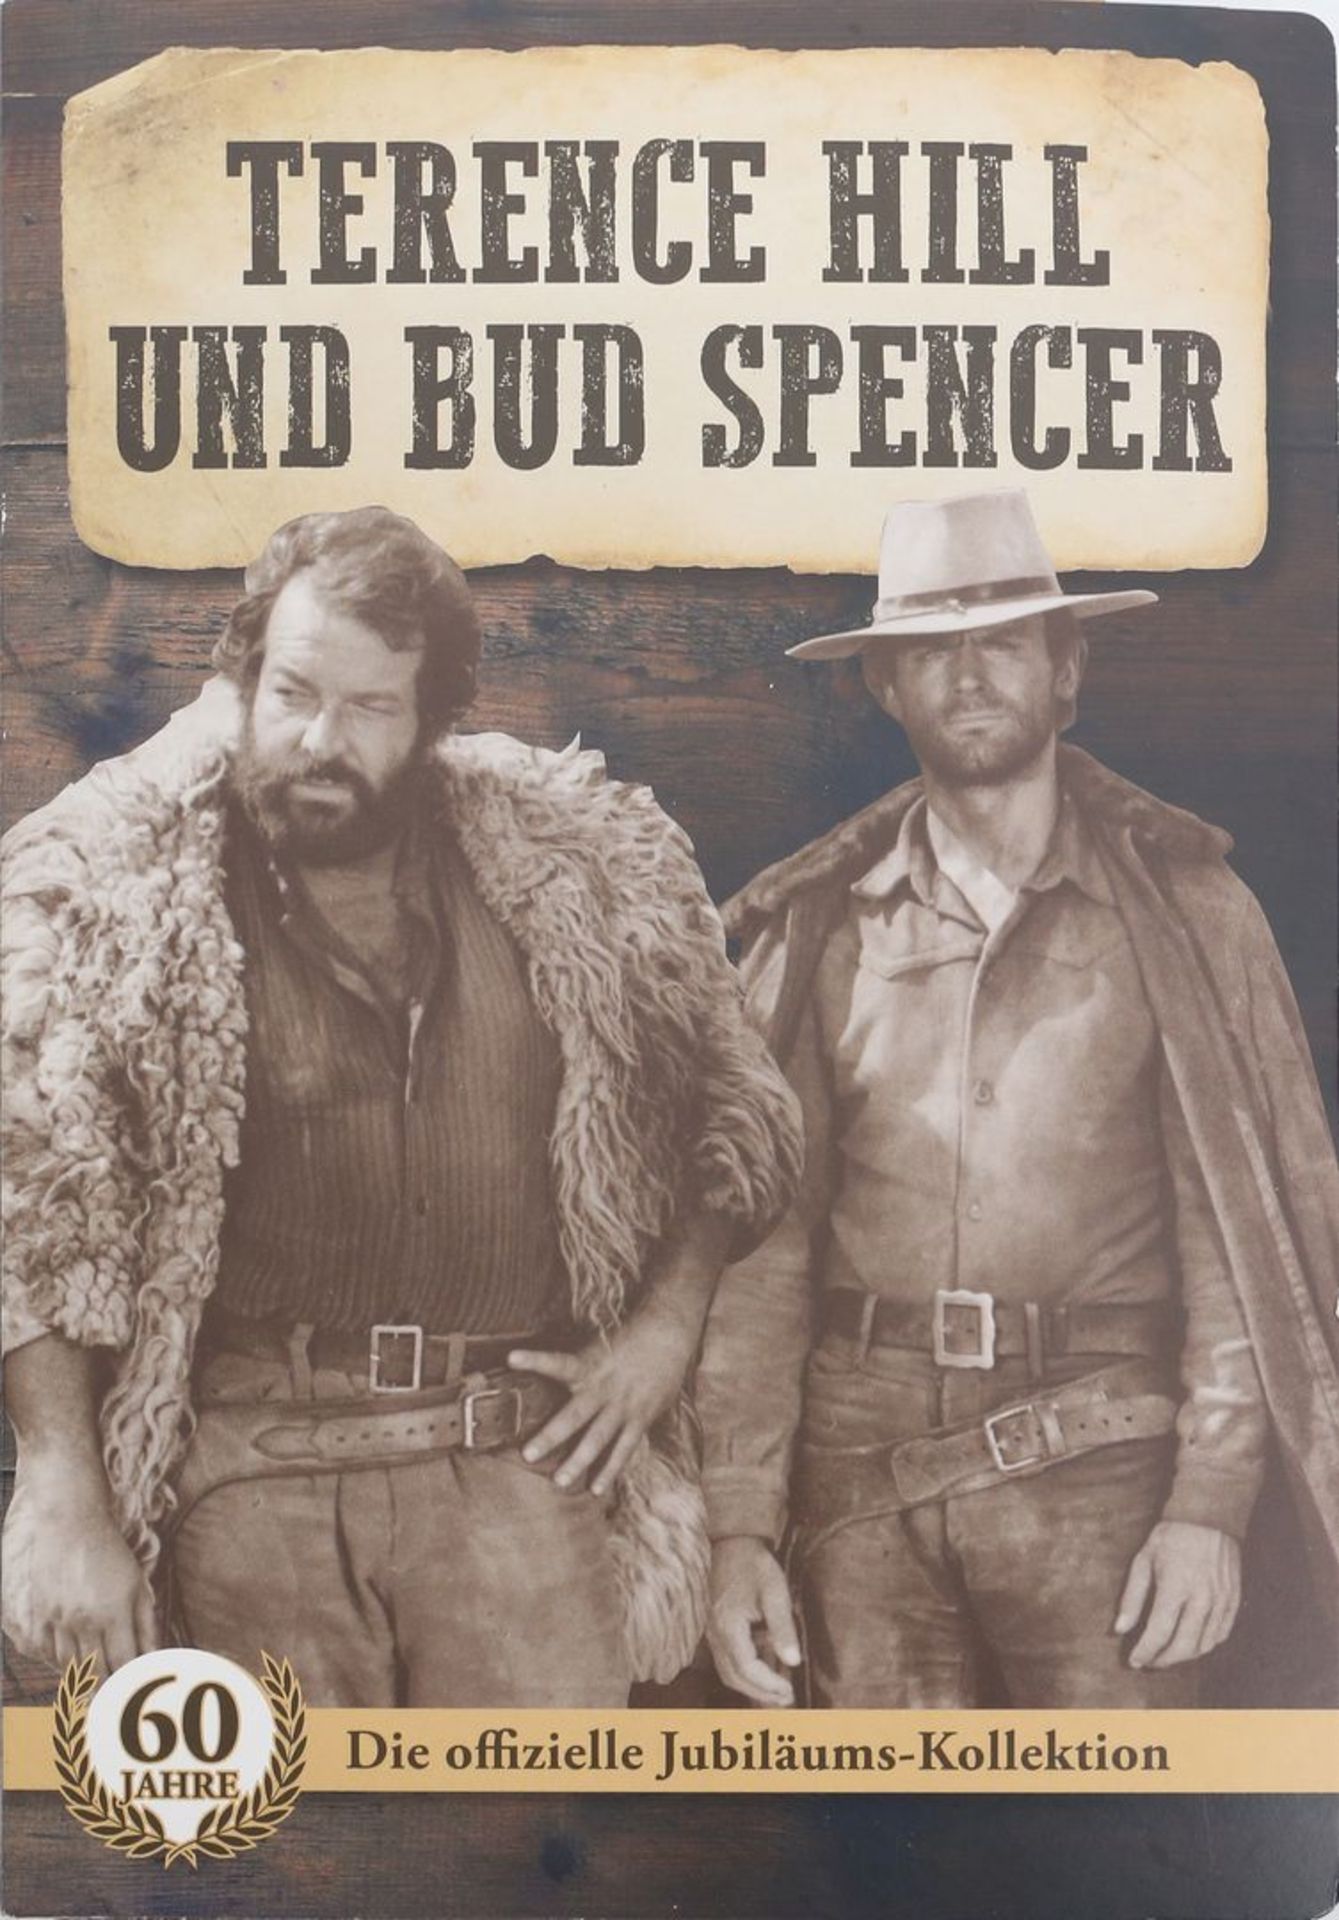 Sammlung Gedenkmedaillen "60 Jahre Terence Hill und Bud Spencer". - Image 2 of 2